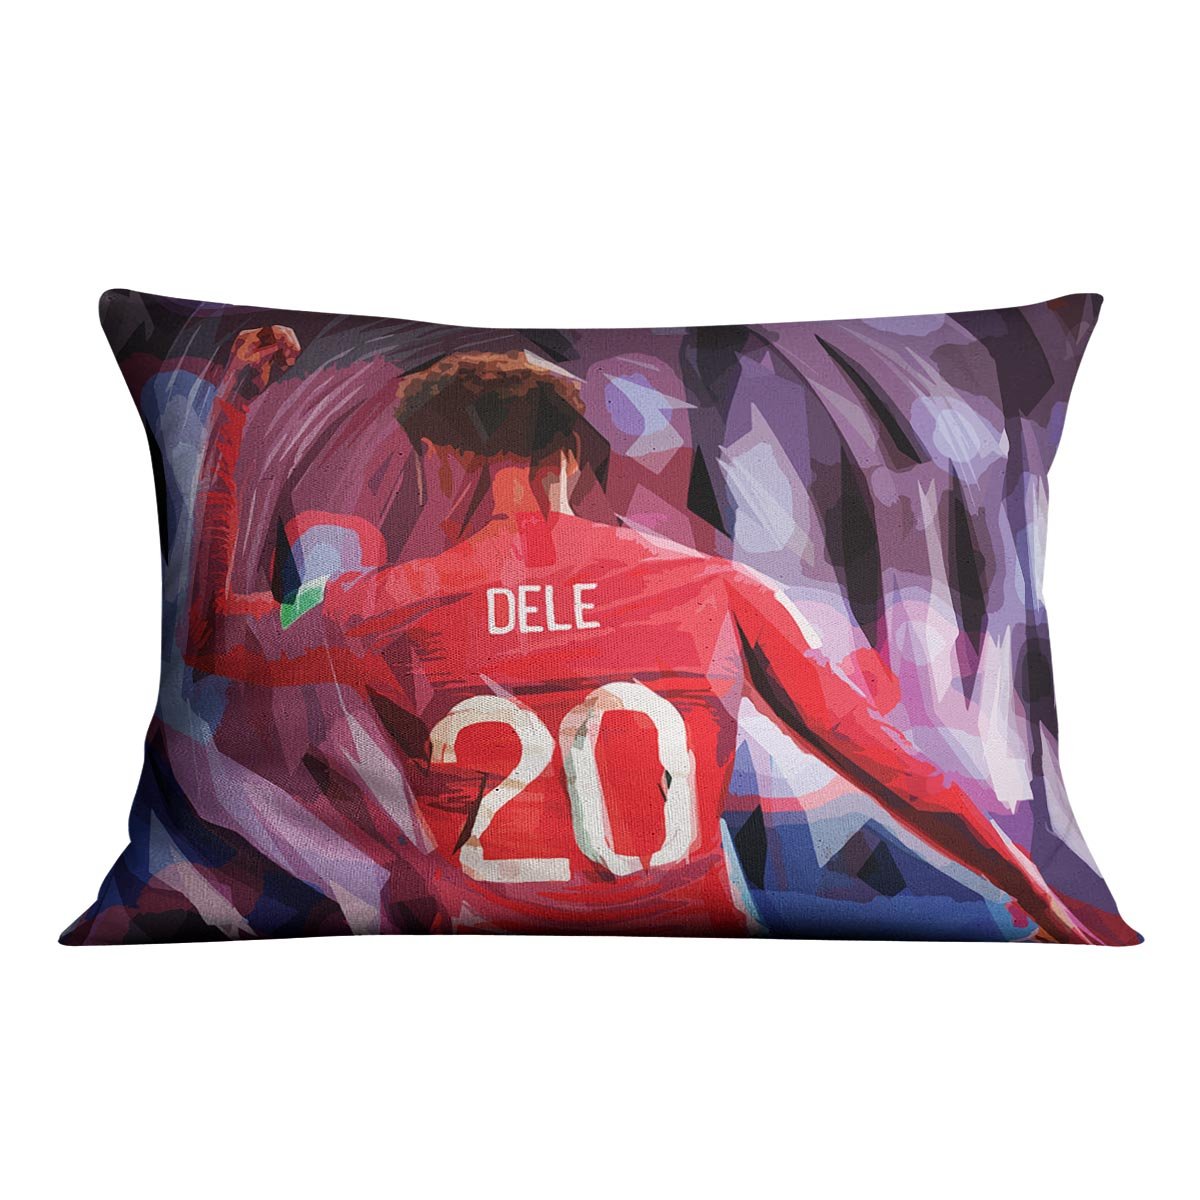 Dele Alli England Celebration Cushion